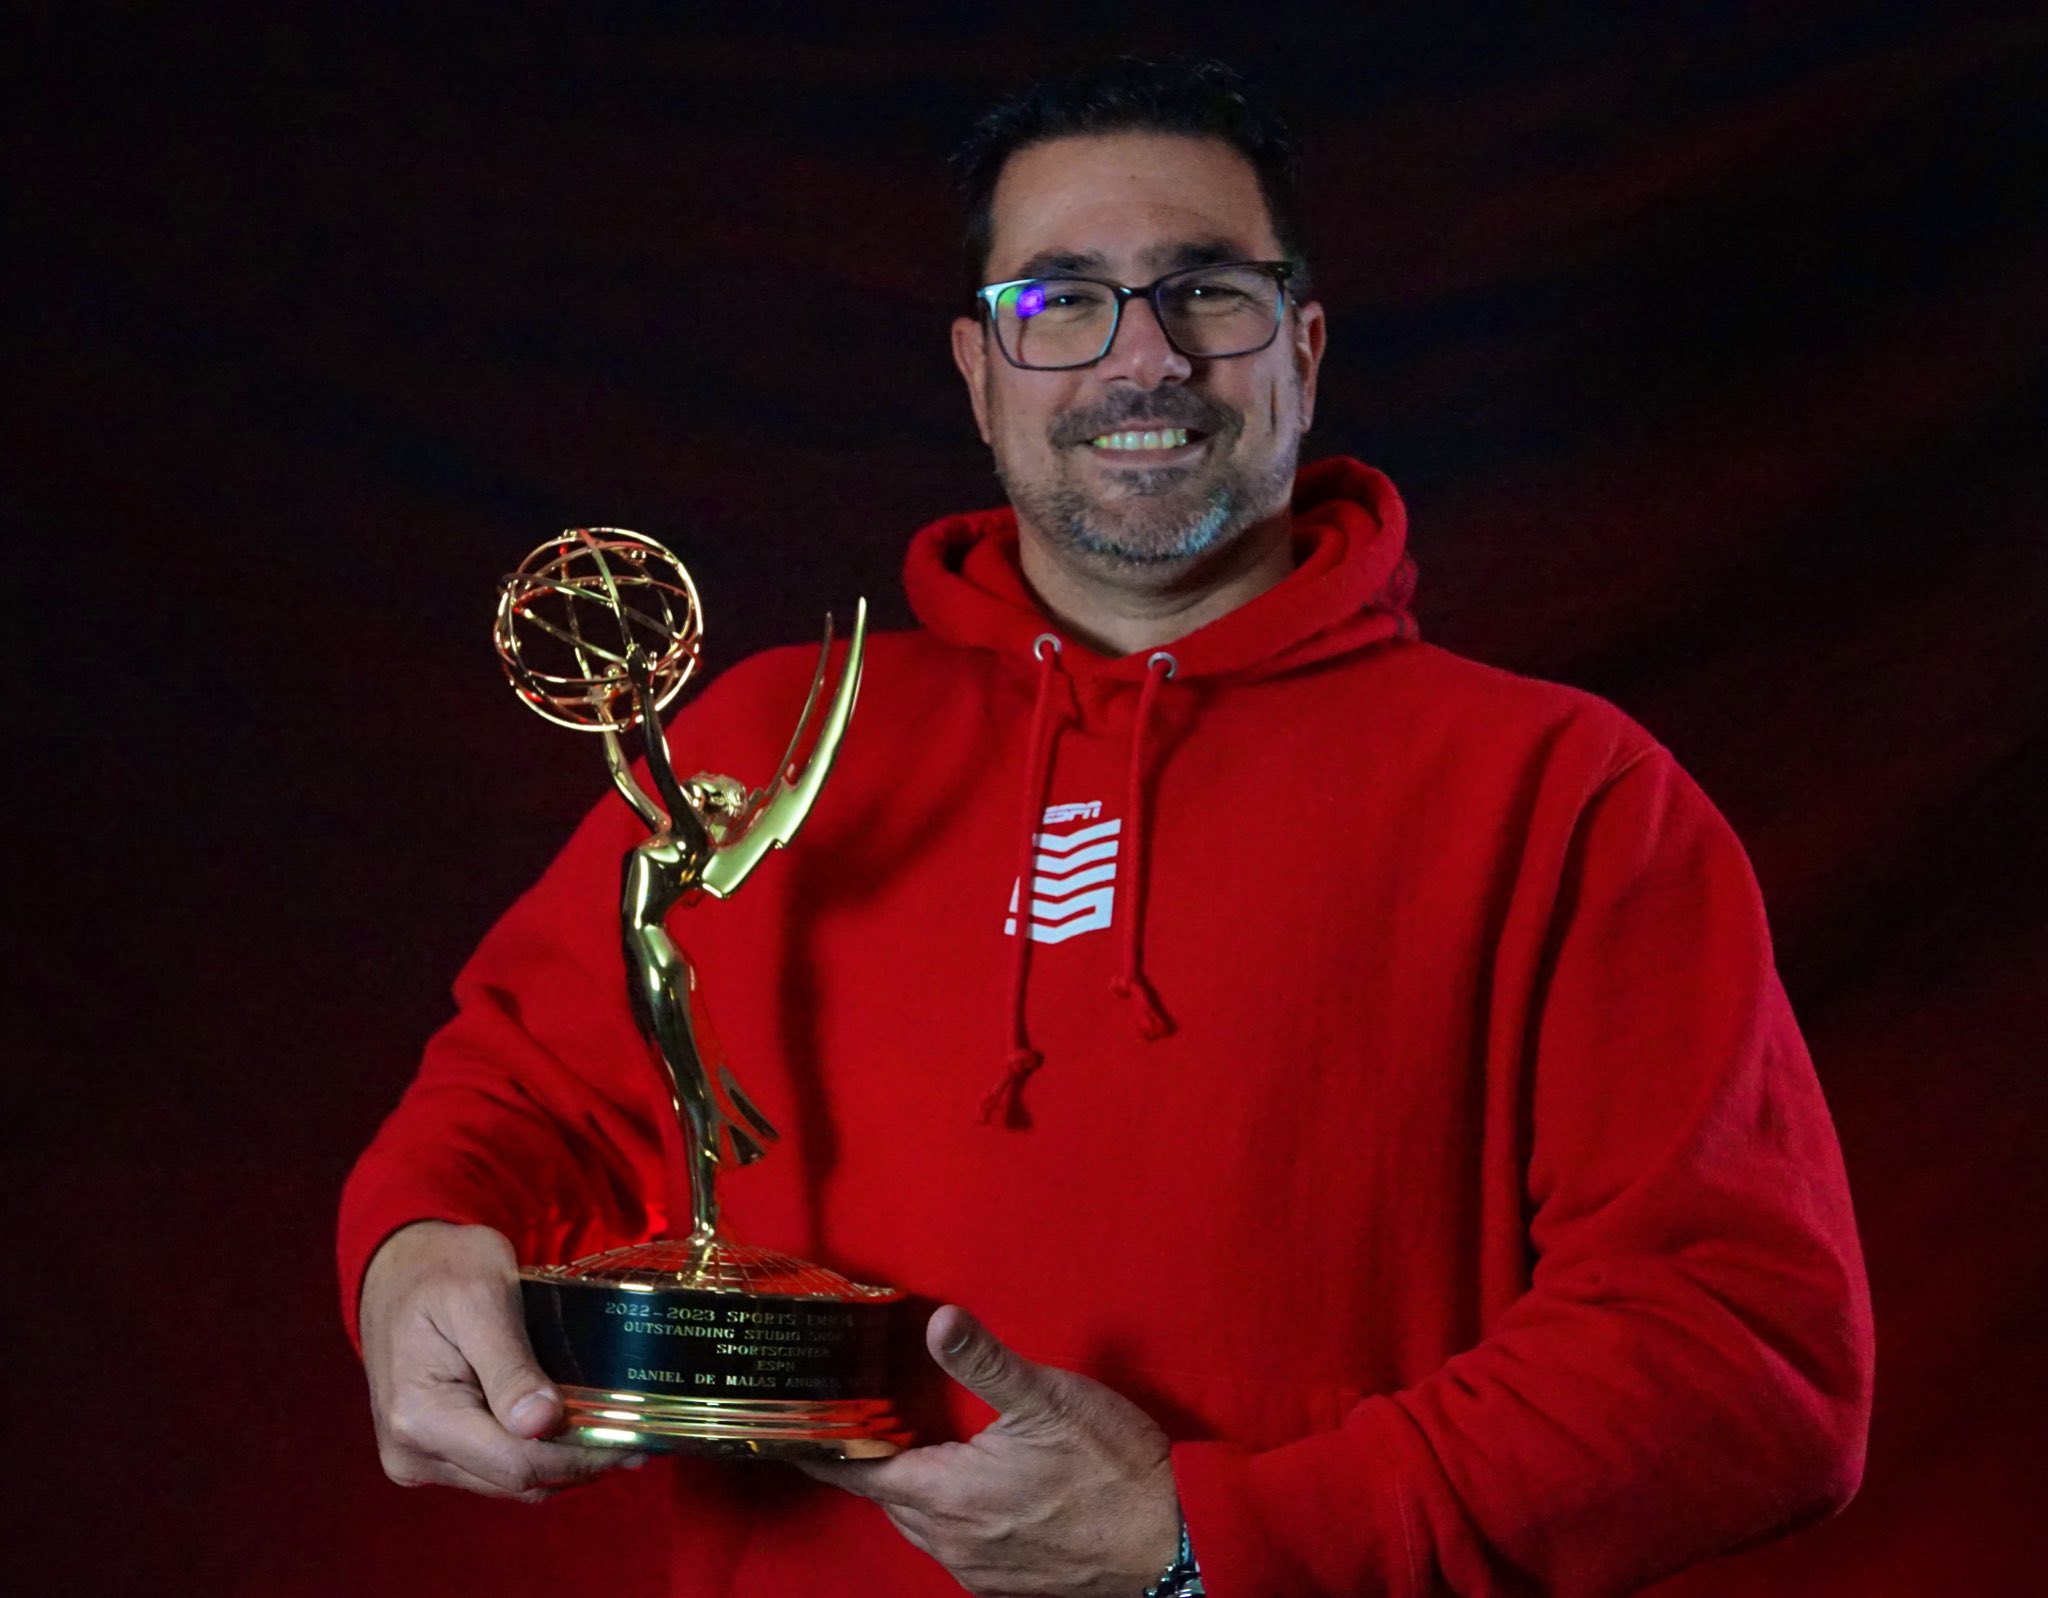 Quienes Somos en la Junta Directiva: Daniel de Malas ganador de Emmy